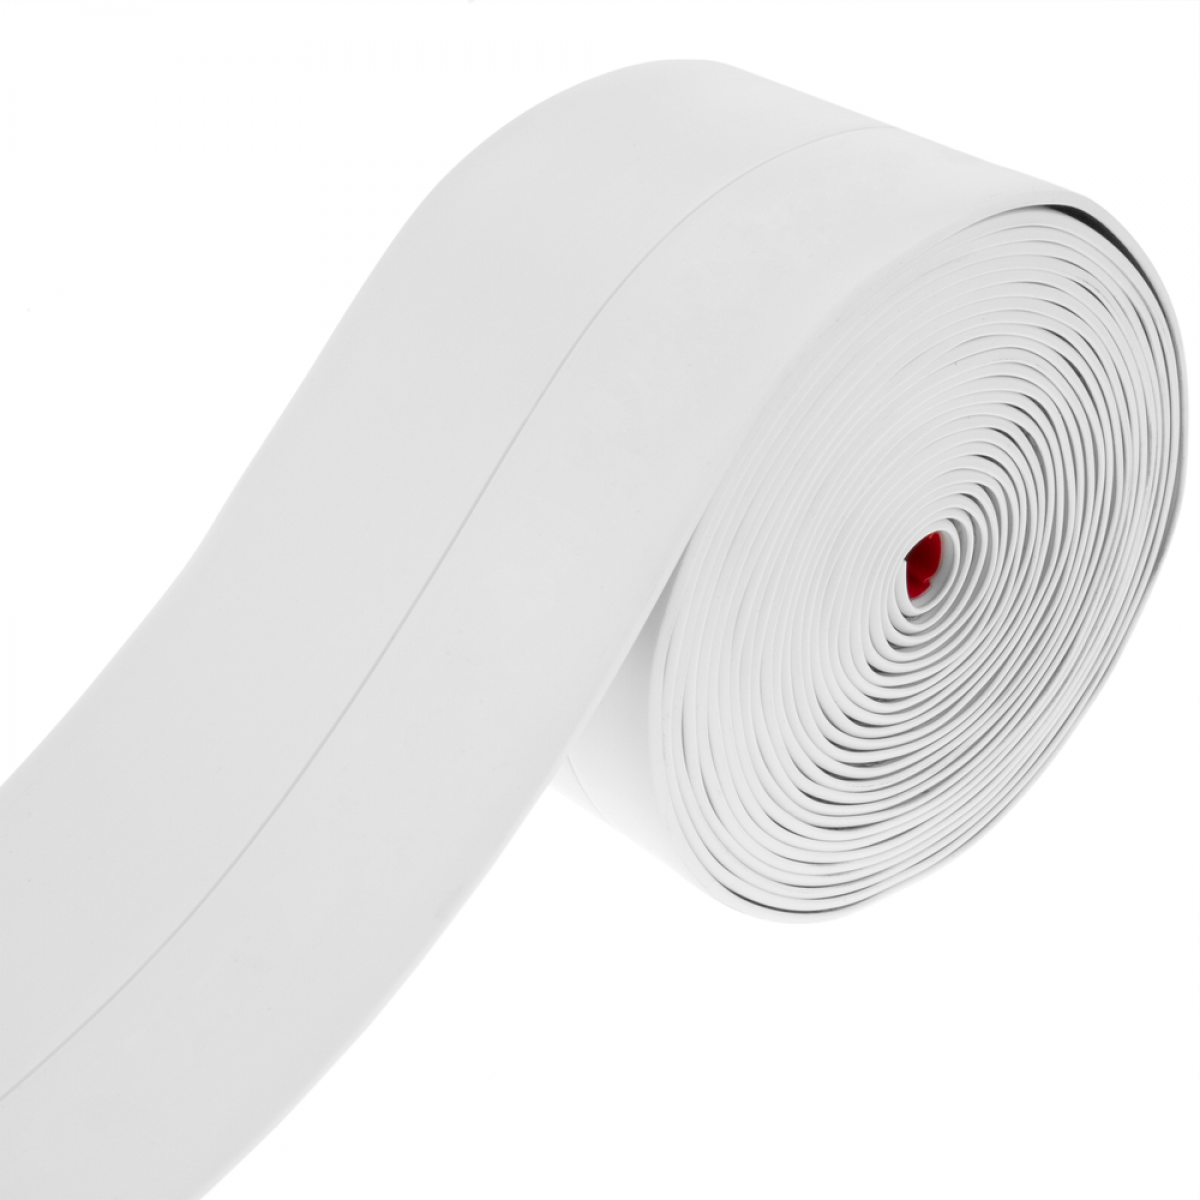 Primematik - Plinthe flexible autocollante 19 x 19 mm. Longueur 5 m blanc - Plinthe carrelage